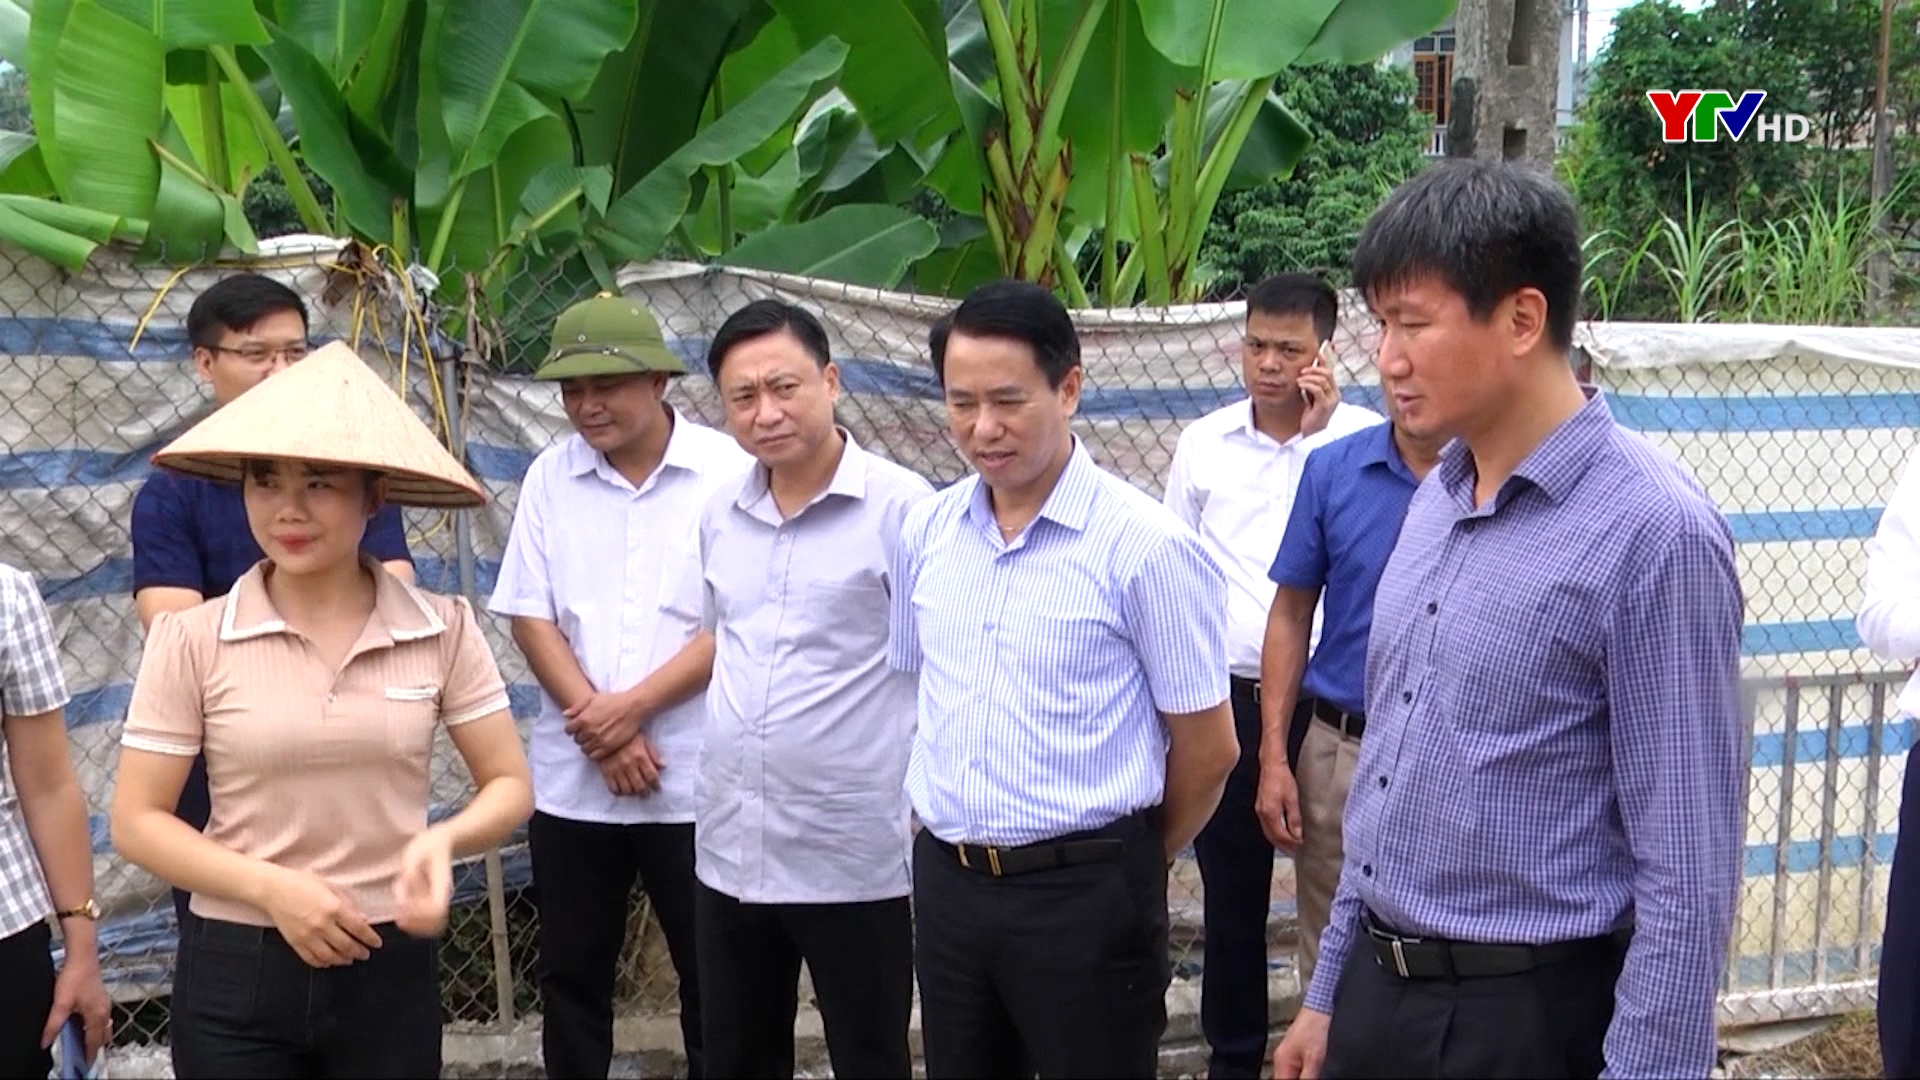 Đồng chí Chủ tịch UBND tỉnh Trần Huy Tuấn kiểm tra việc thực hiện Chương trình hành động 190 của Tỉnh ủy tại huyện Văn Yên